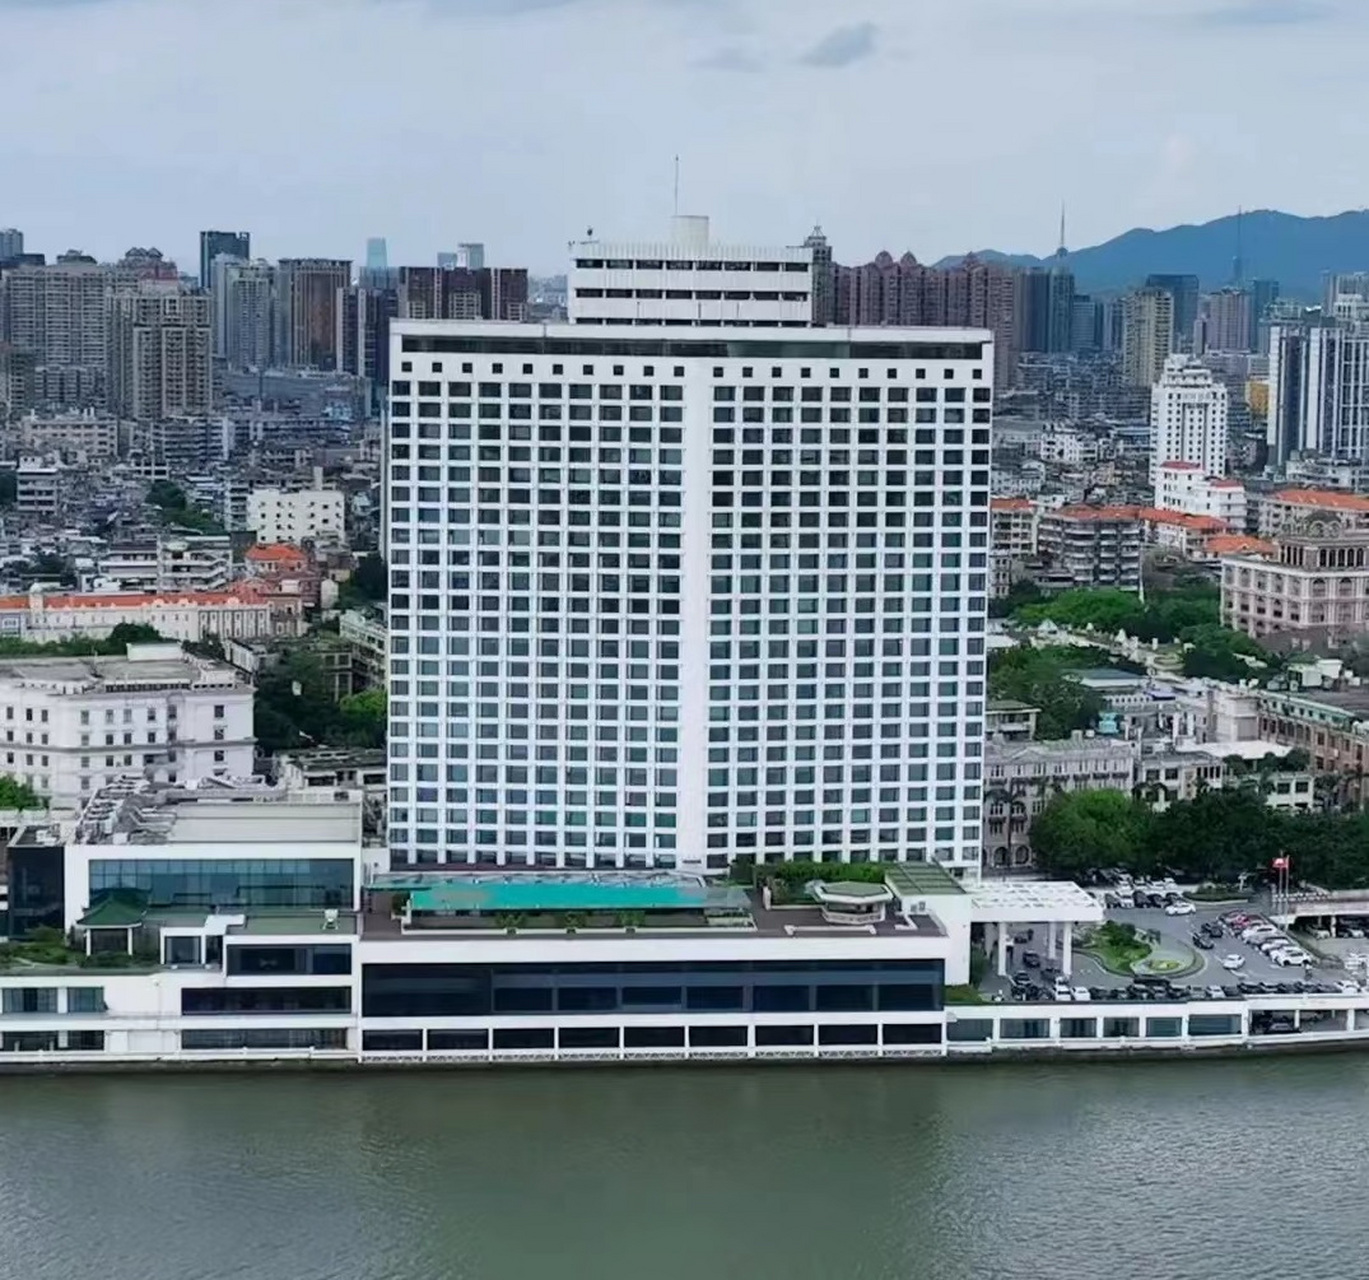 中国第一家五星级酒店 广州白天鹅宾馆,中国第一家五星级酒店,这座